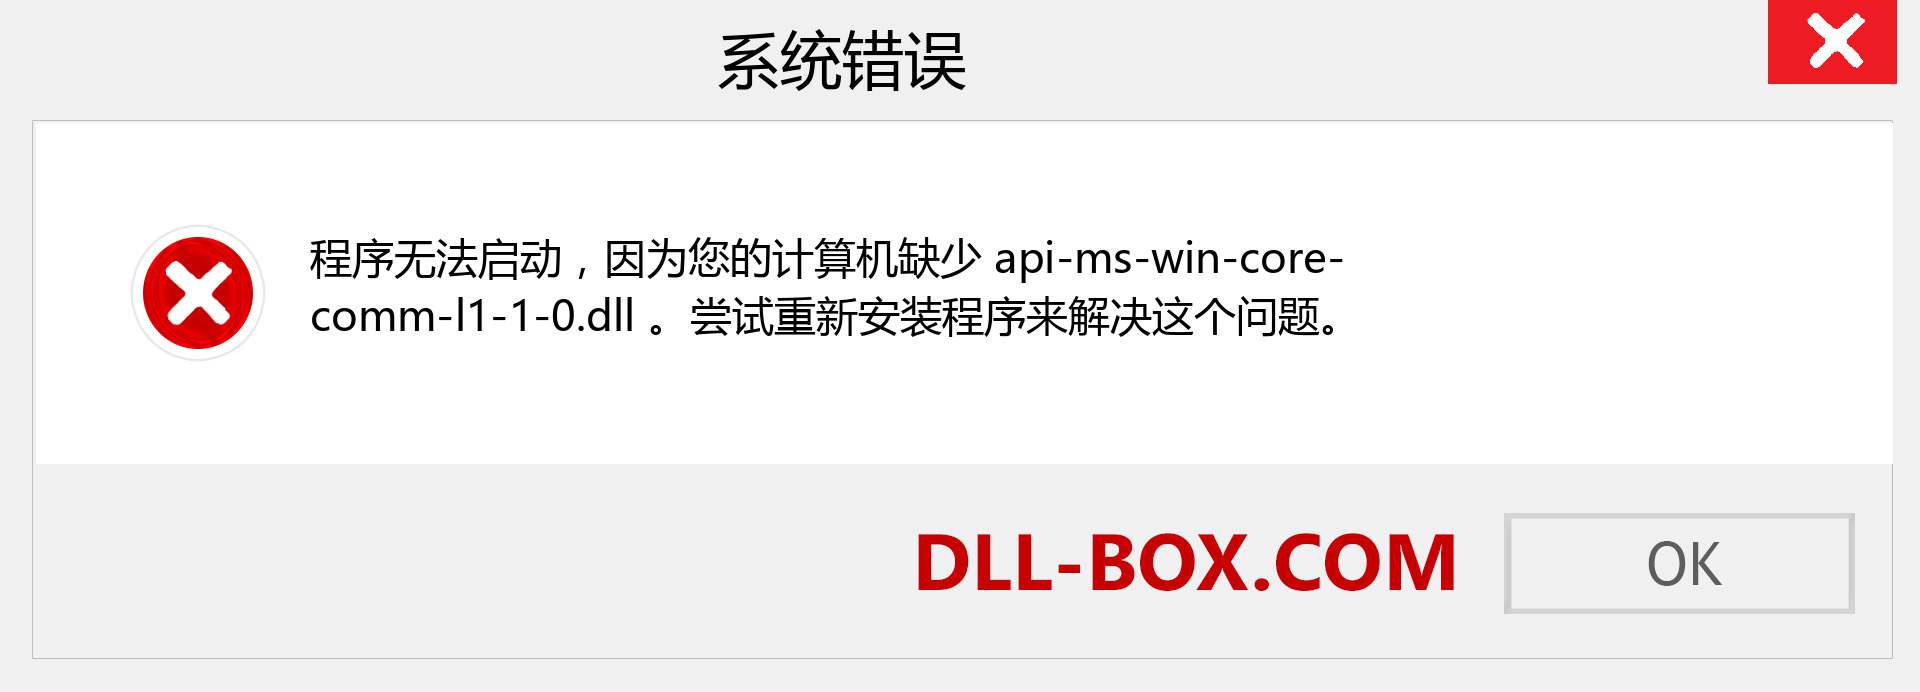 api-ms-win-core-comm-l1-1-0.dll 文件丢失？。 适用于 Windows 7、8、10 的下载 - 修复 Windows、照片、图像上的 api-ms-win-core-comm-l1-1-0 dll 丢失错误